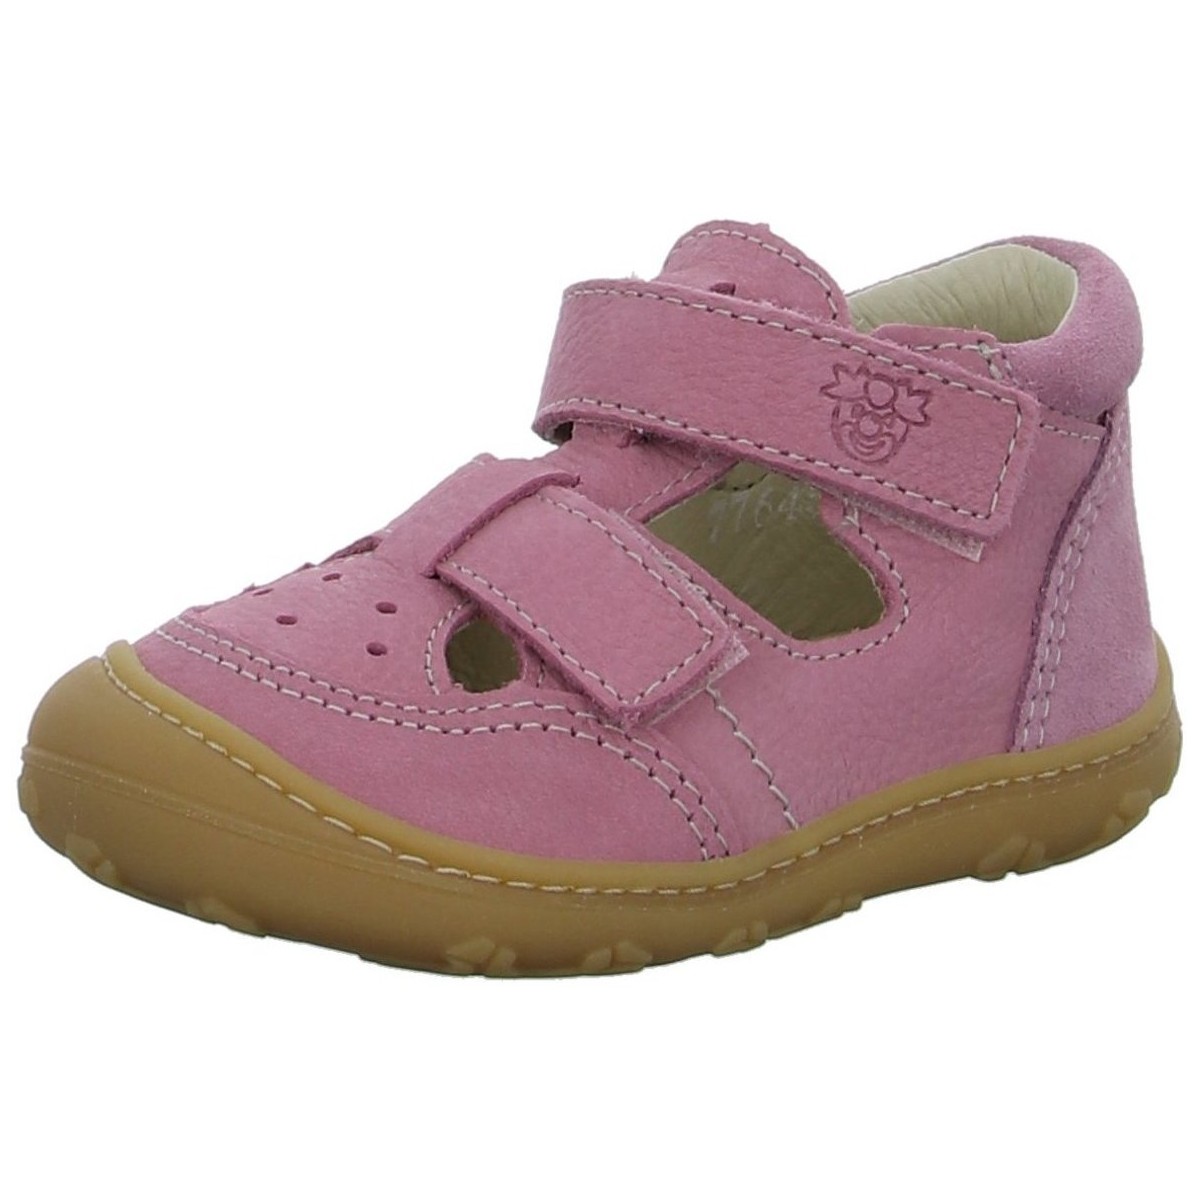 Schuhe Mädchen Babyschuhe Pepino By Ricosta Maedchen 50 1201702/330 Other